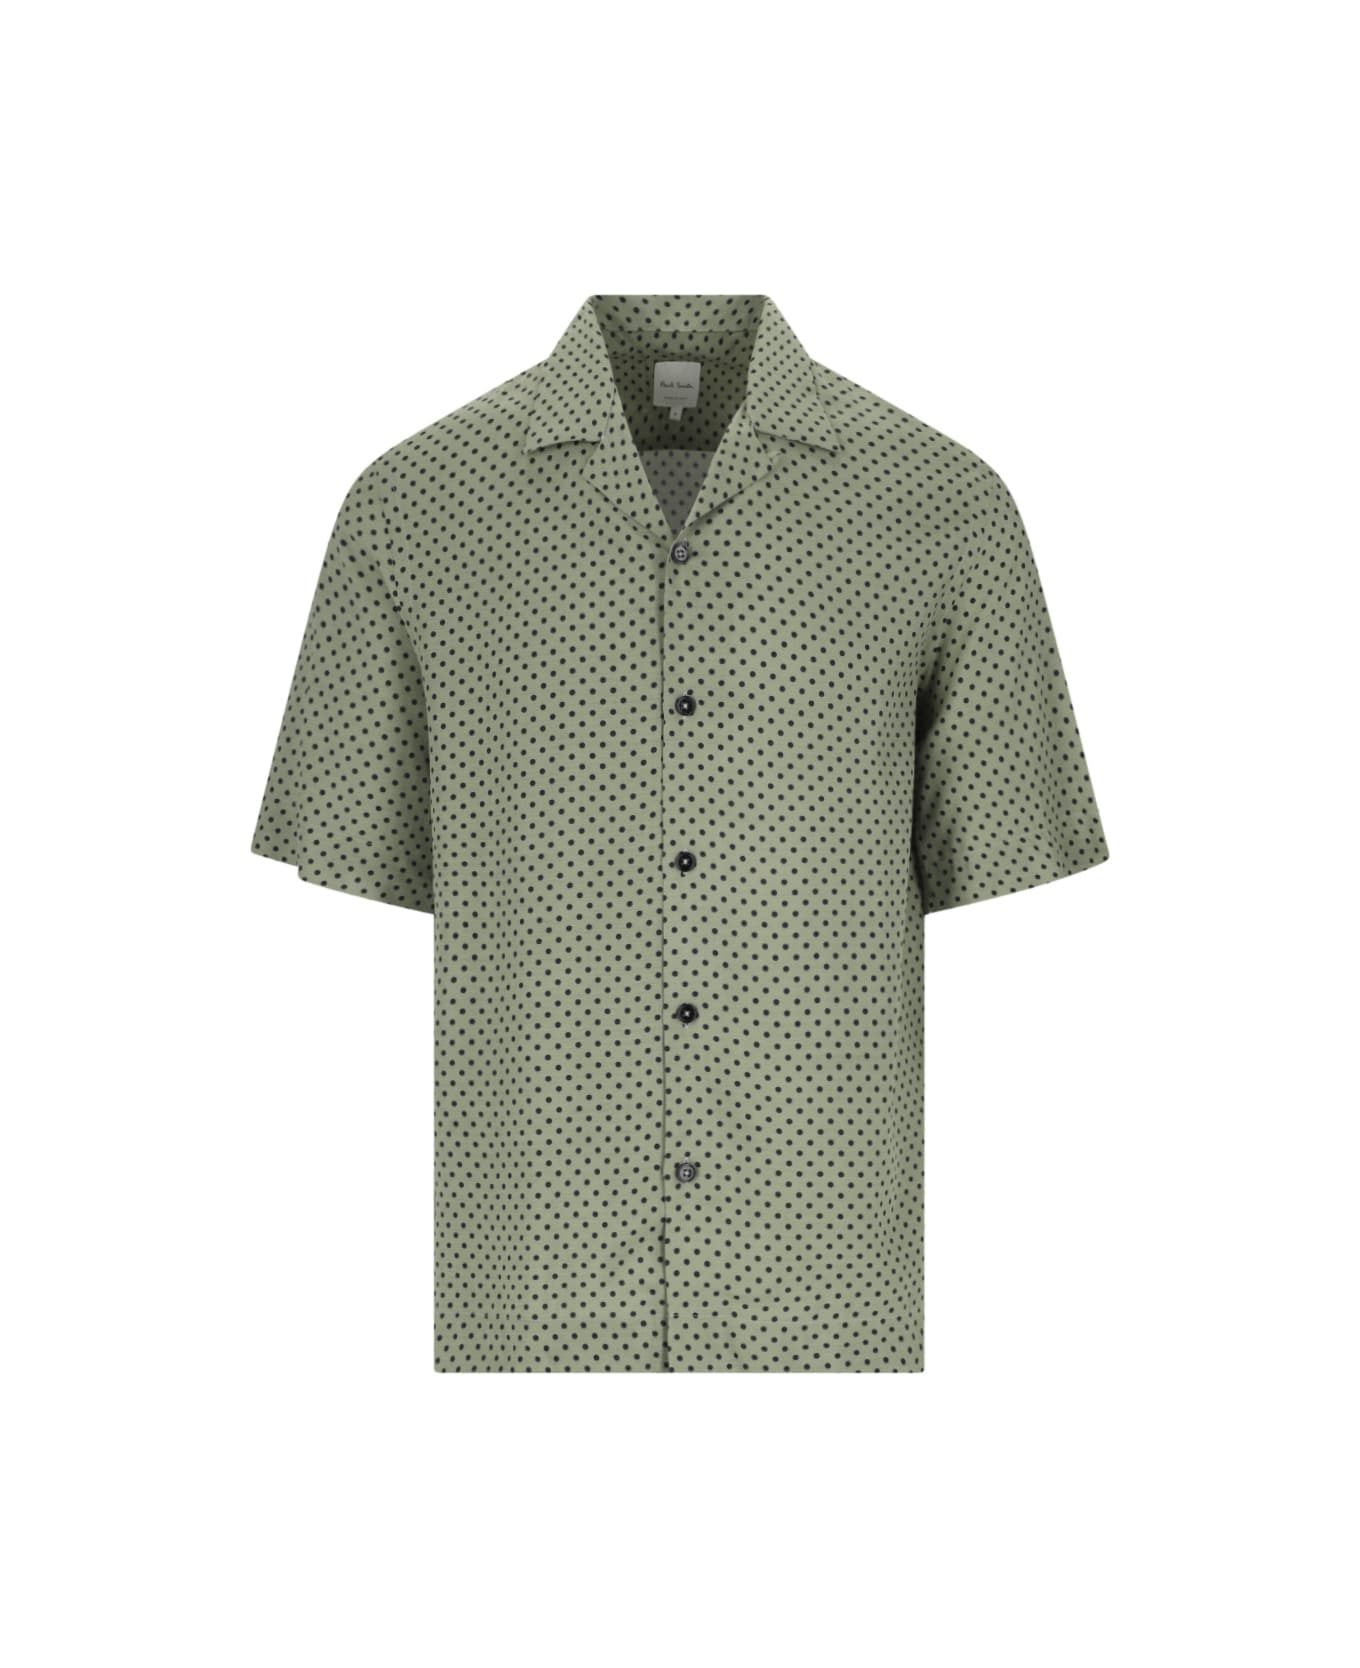 Paul Smith Polka Dot Shirt - Green